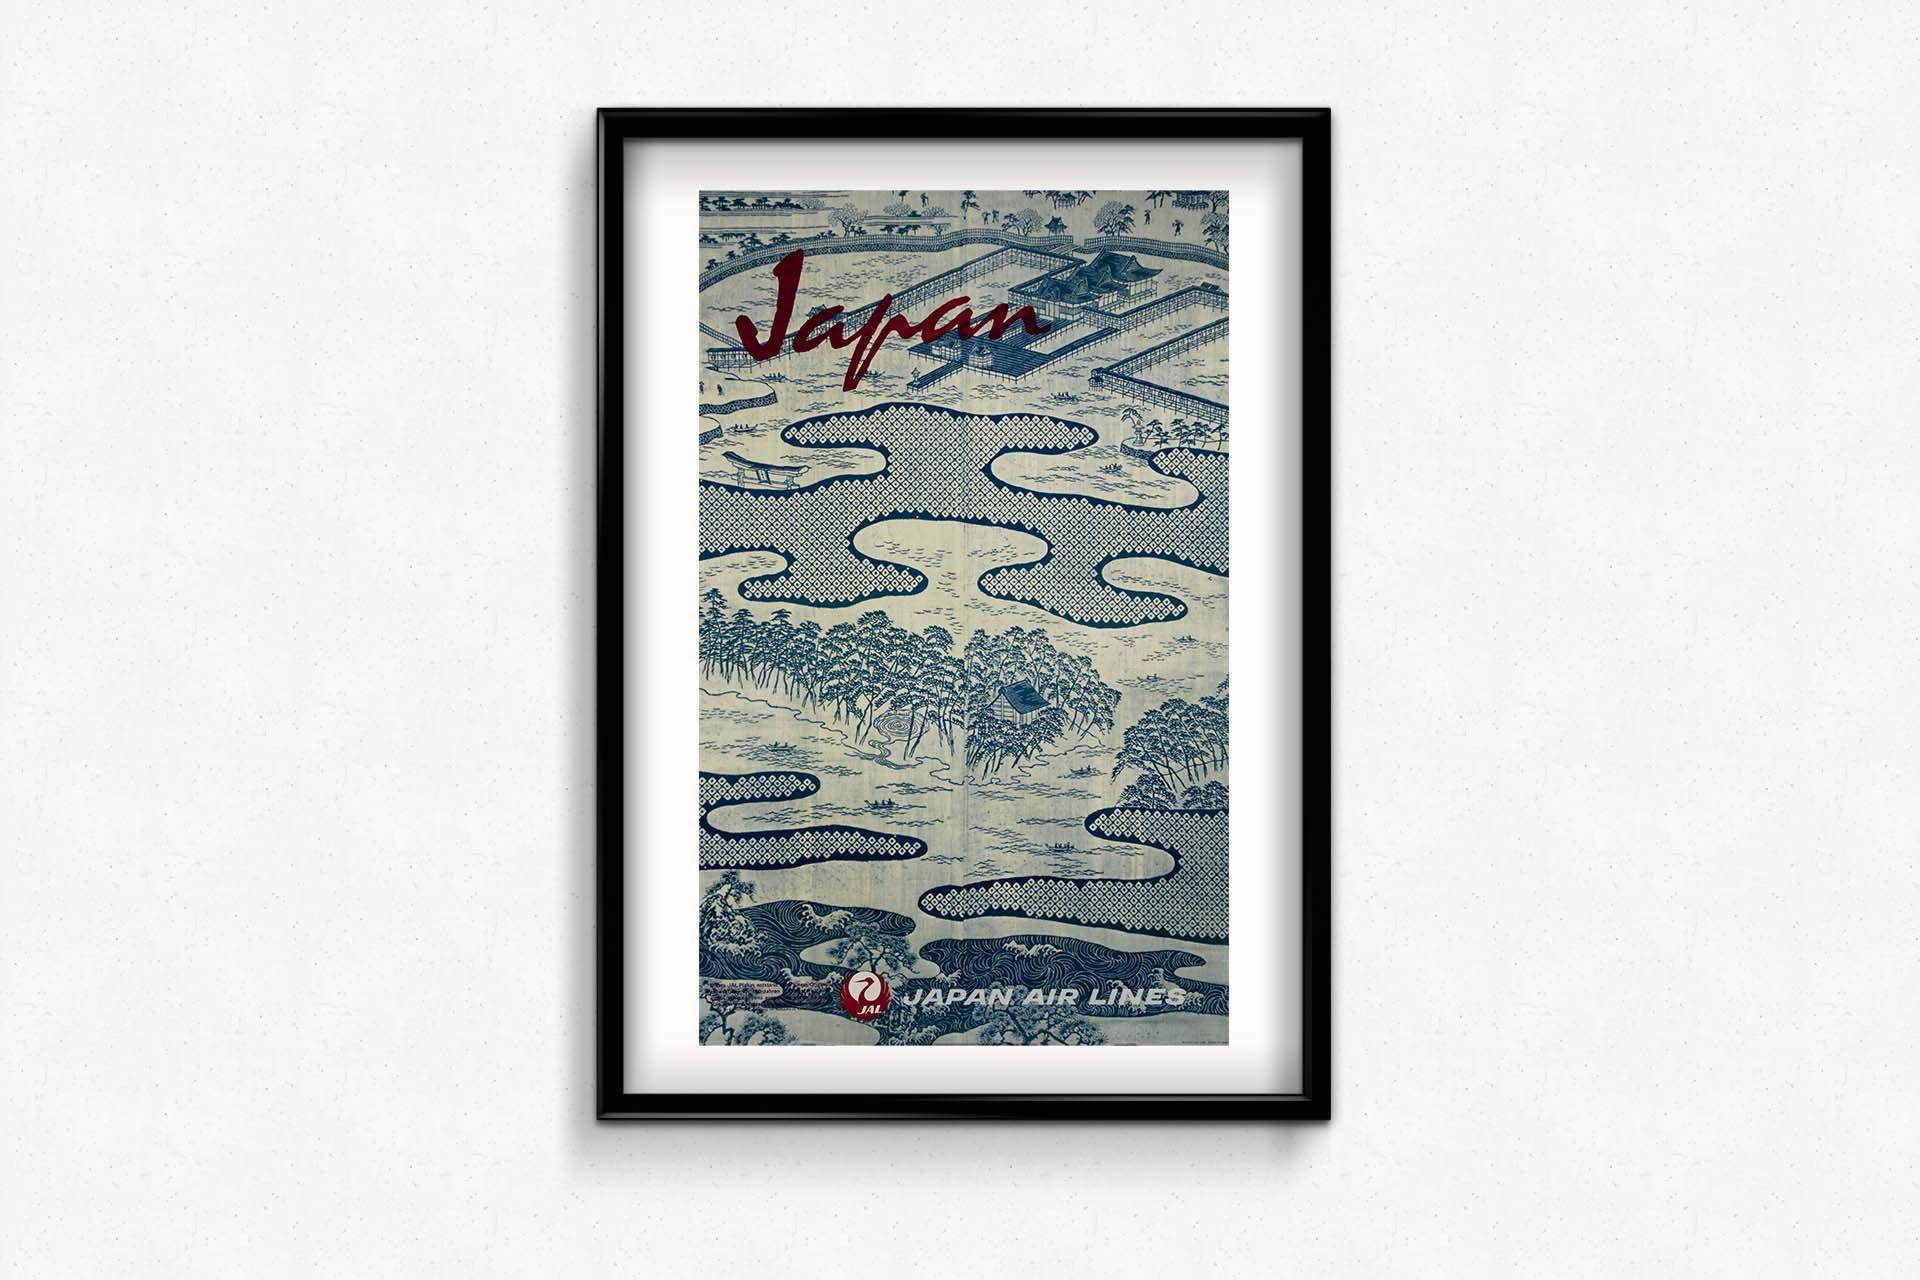 1964 stellte Japan Air Lines (JAL) ein originelles Reiseplakat vor, das einen fesselnden Einblick in den kulturellen Reichtum Japans bot. Das Plakat, das sich auf die traditionelle Kleidung des Yukata-Kimonos konzentrierte, diente als Sinnbild für